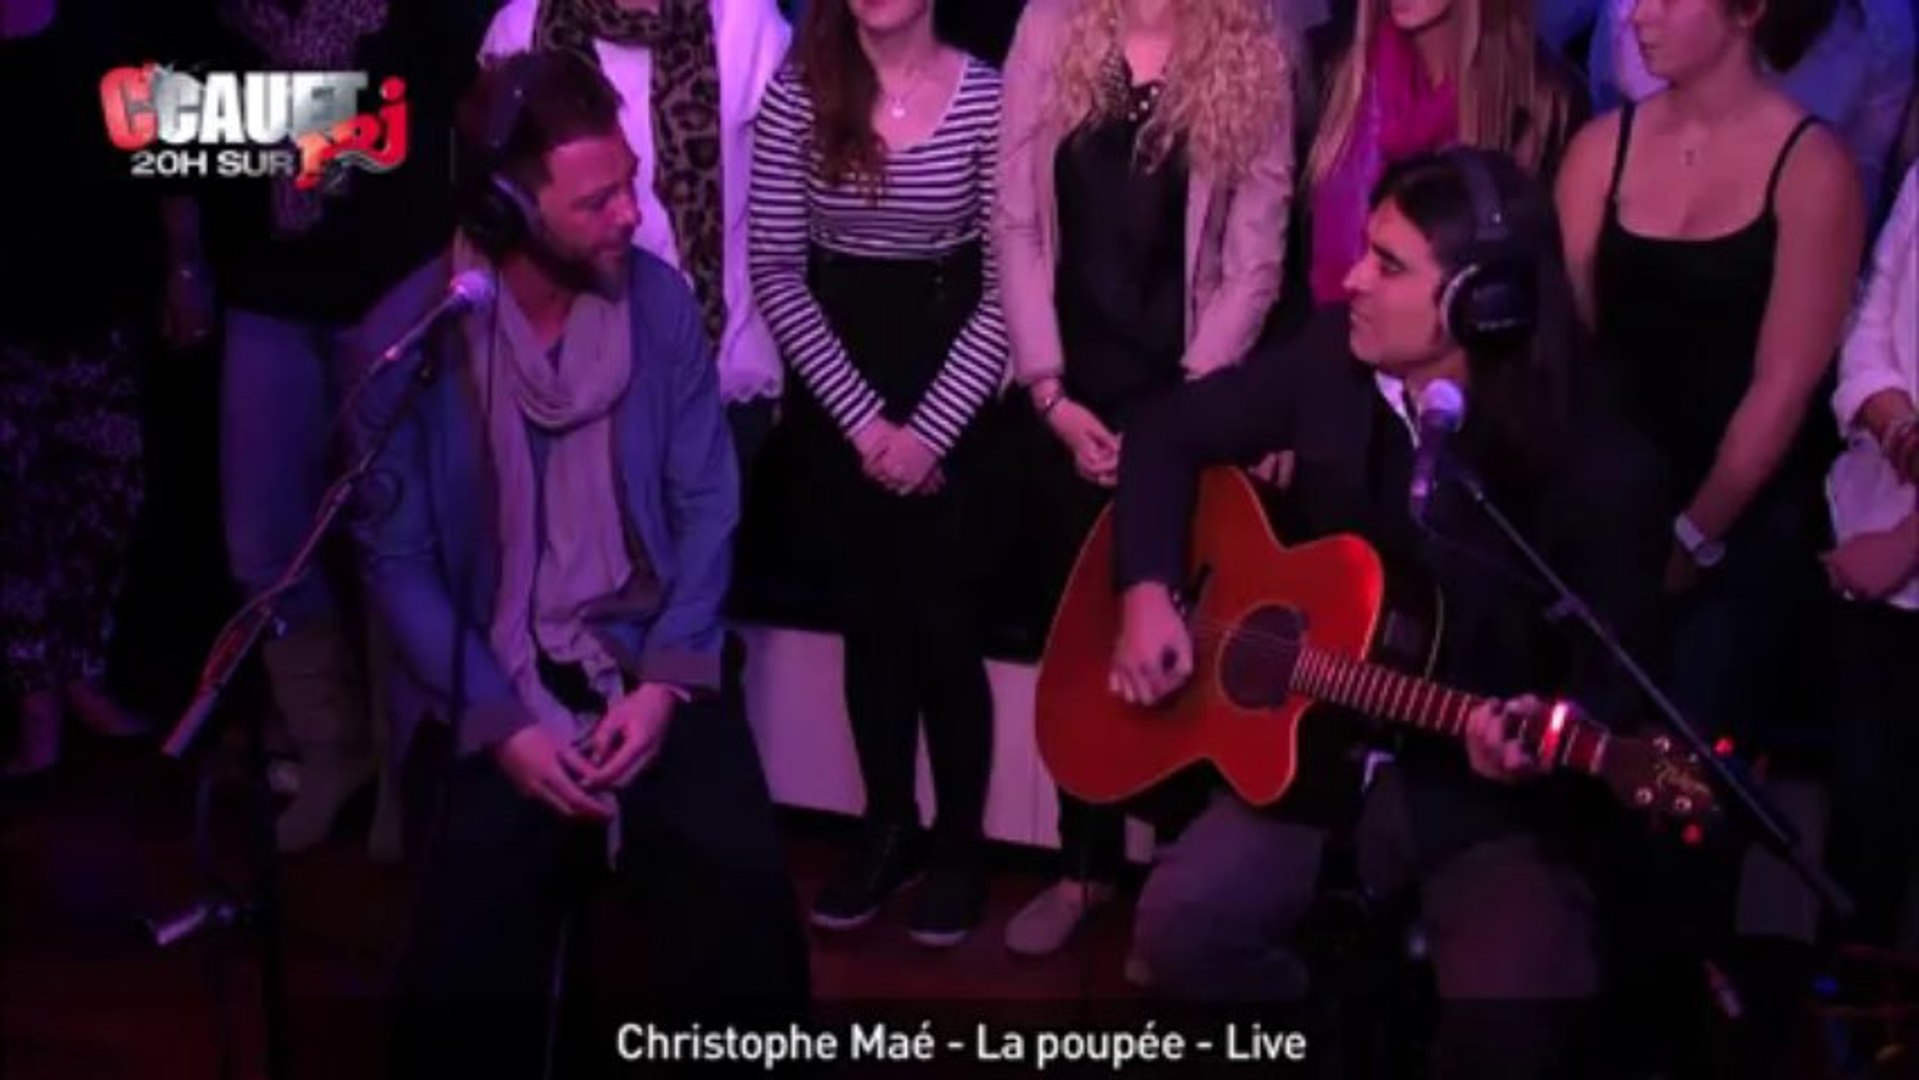 Christophe Maé - La poupée - Live - C'Cauet sur NRJ - Vidéo Dailymotion